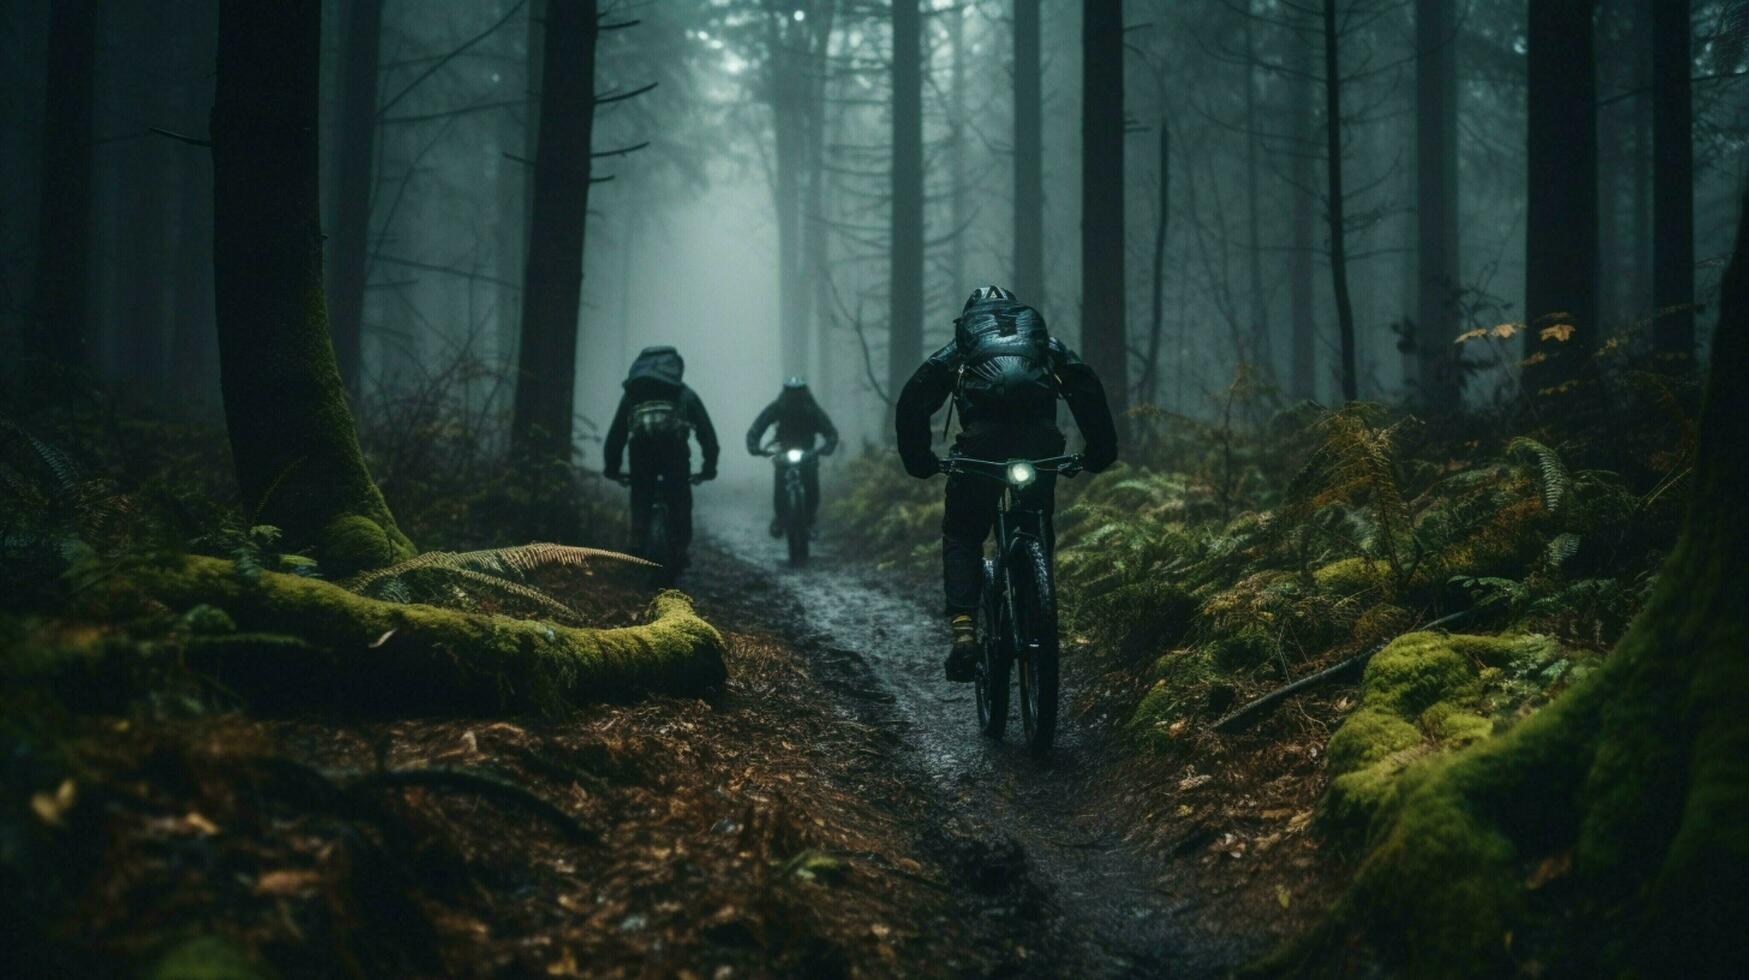 män cykling genom skog extrem sporter äventyr foto